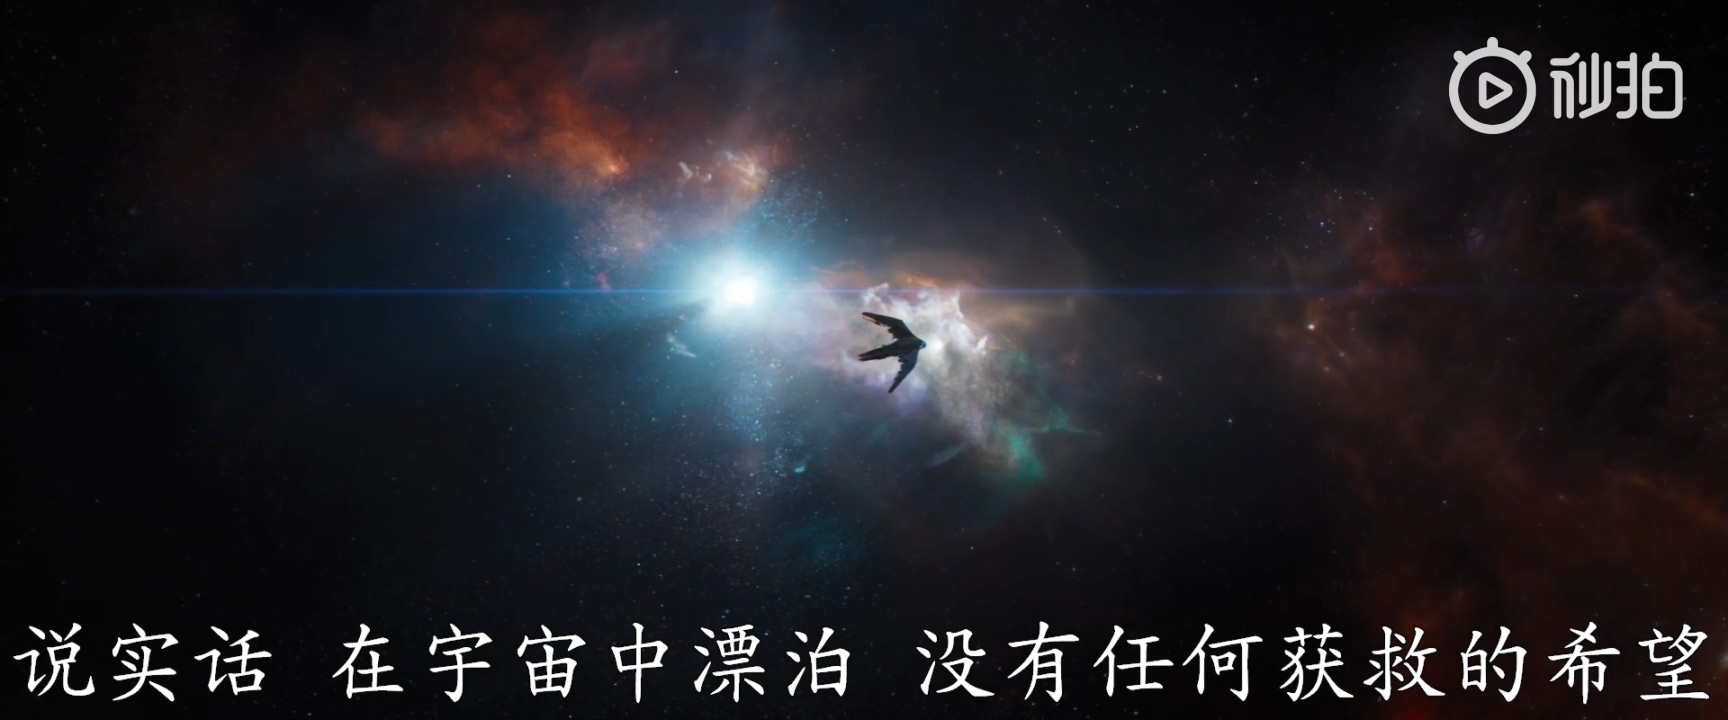 《复仇者联盟4》中文预告首曝 定名“终局之战”